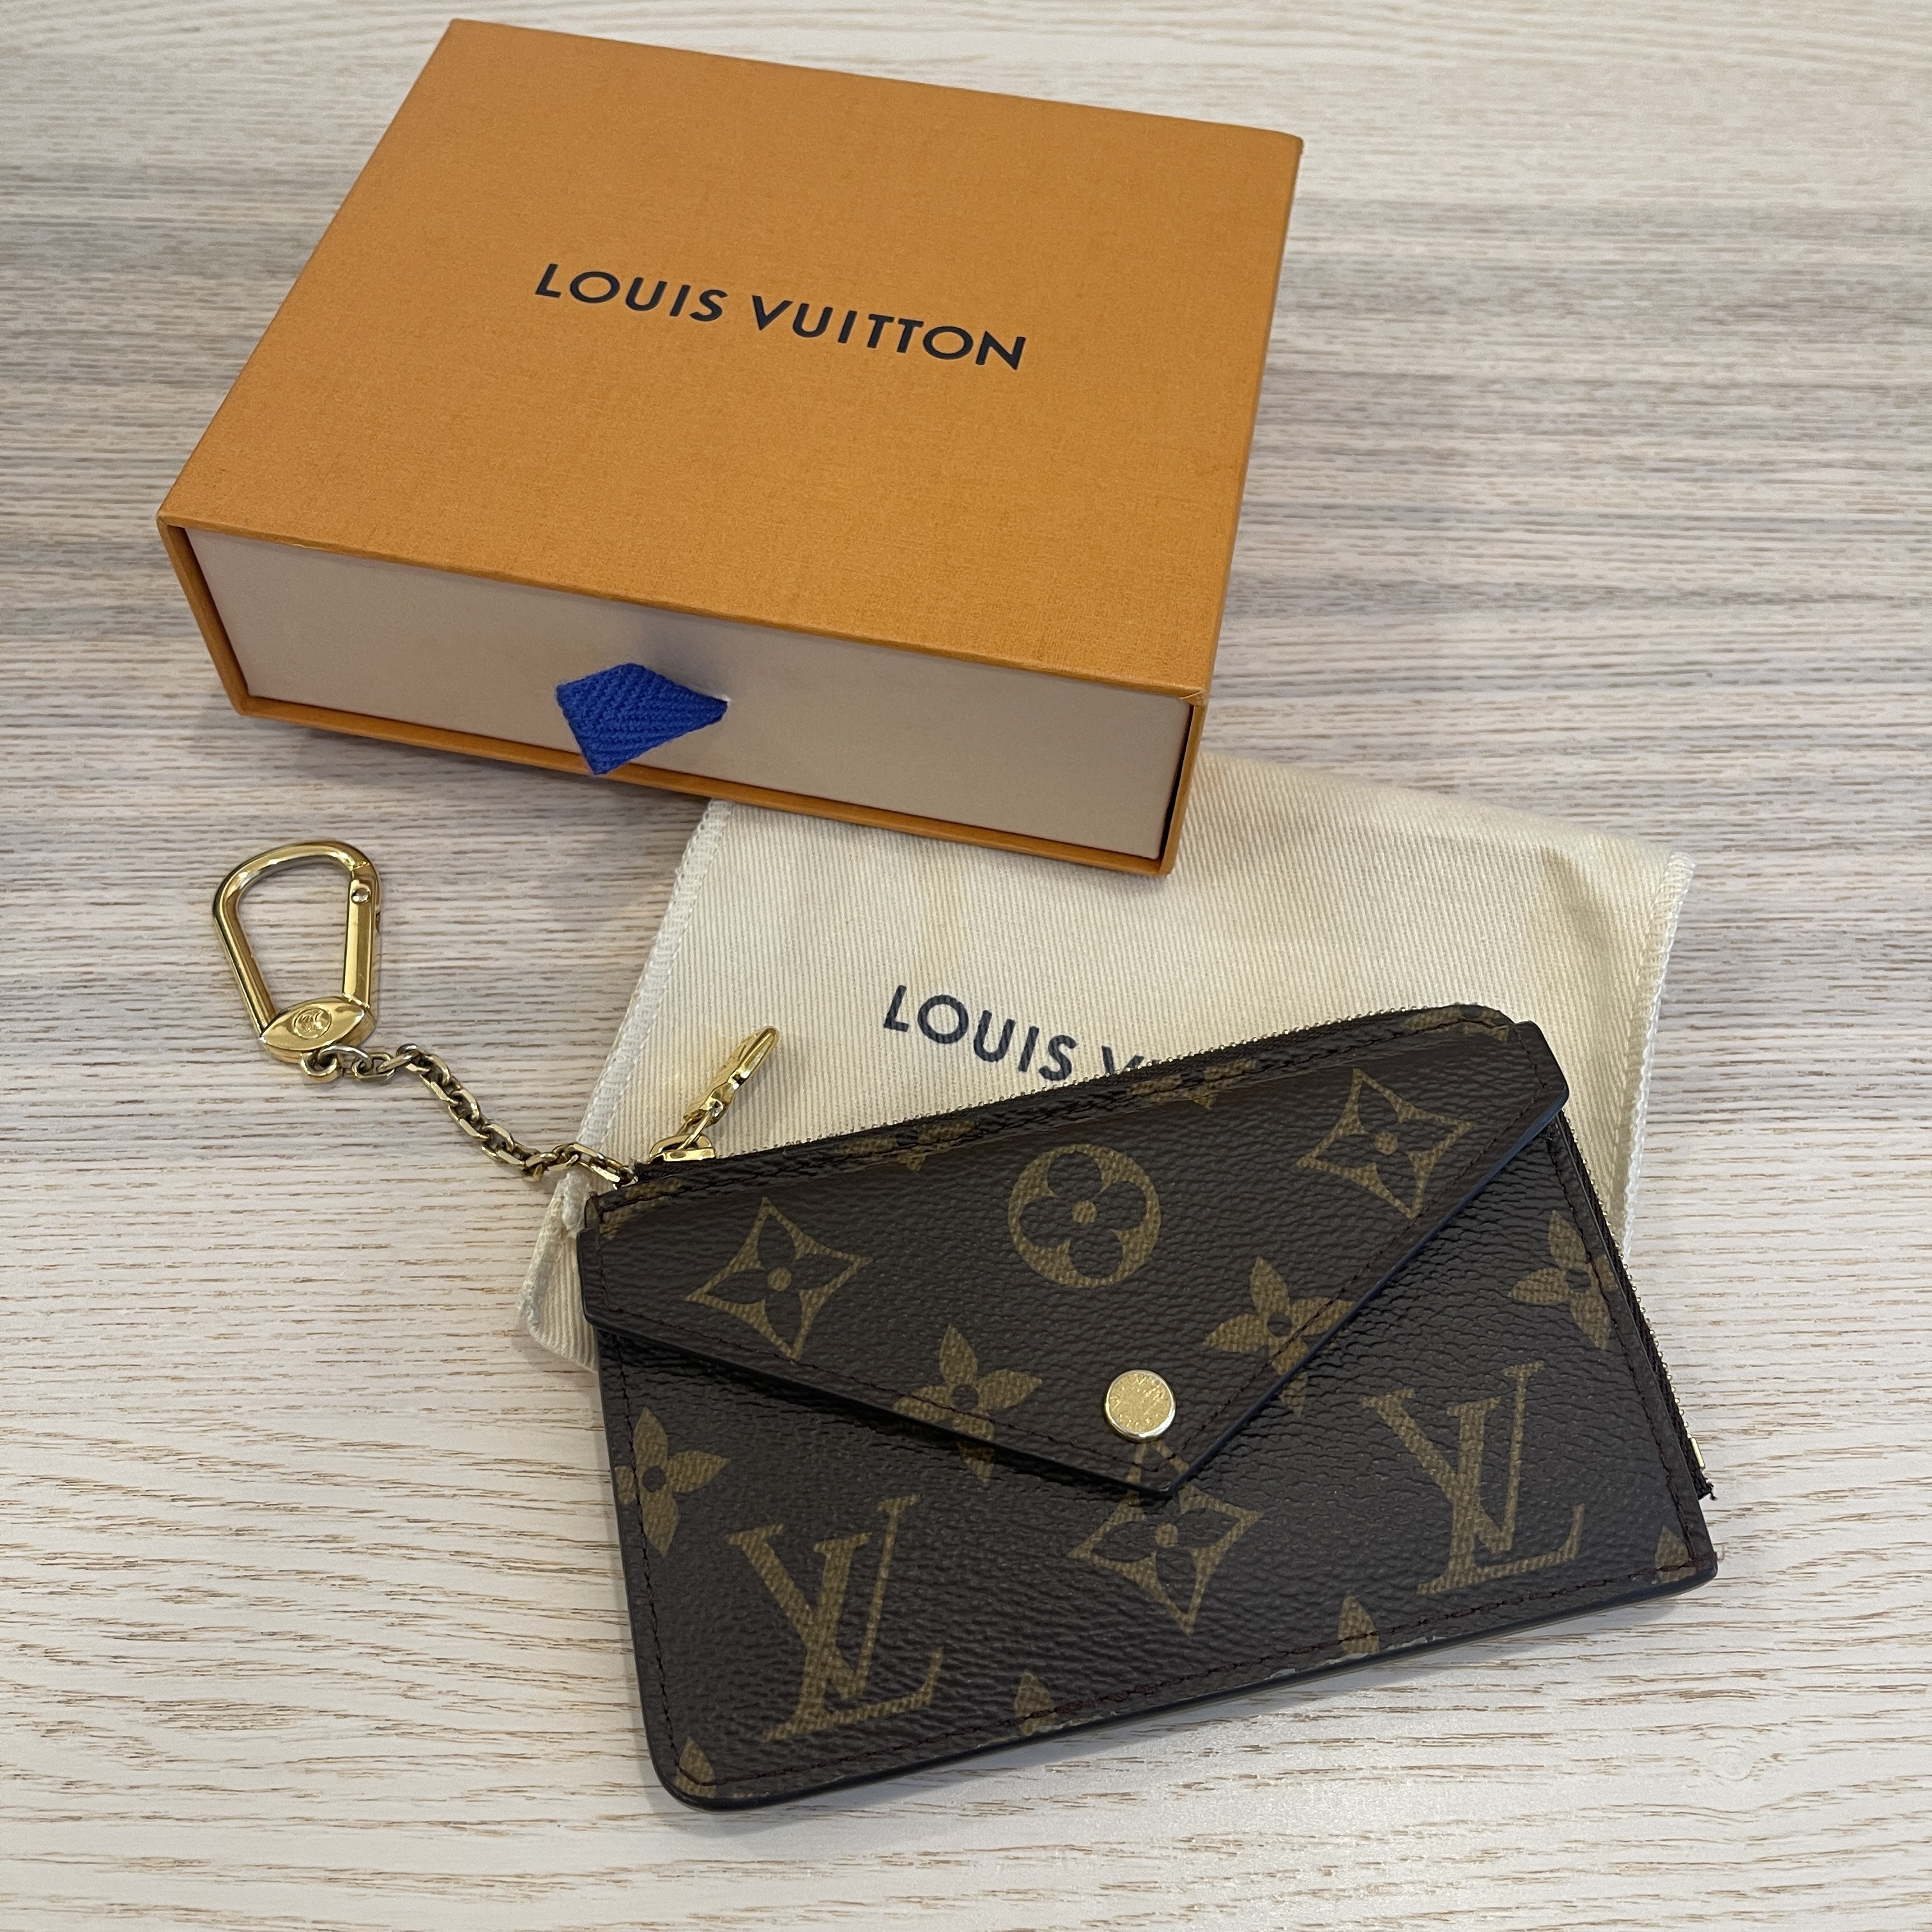 Review  Louis Vuitton Recto Versi Card Holder Wallet 